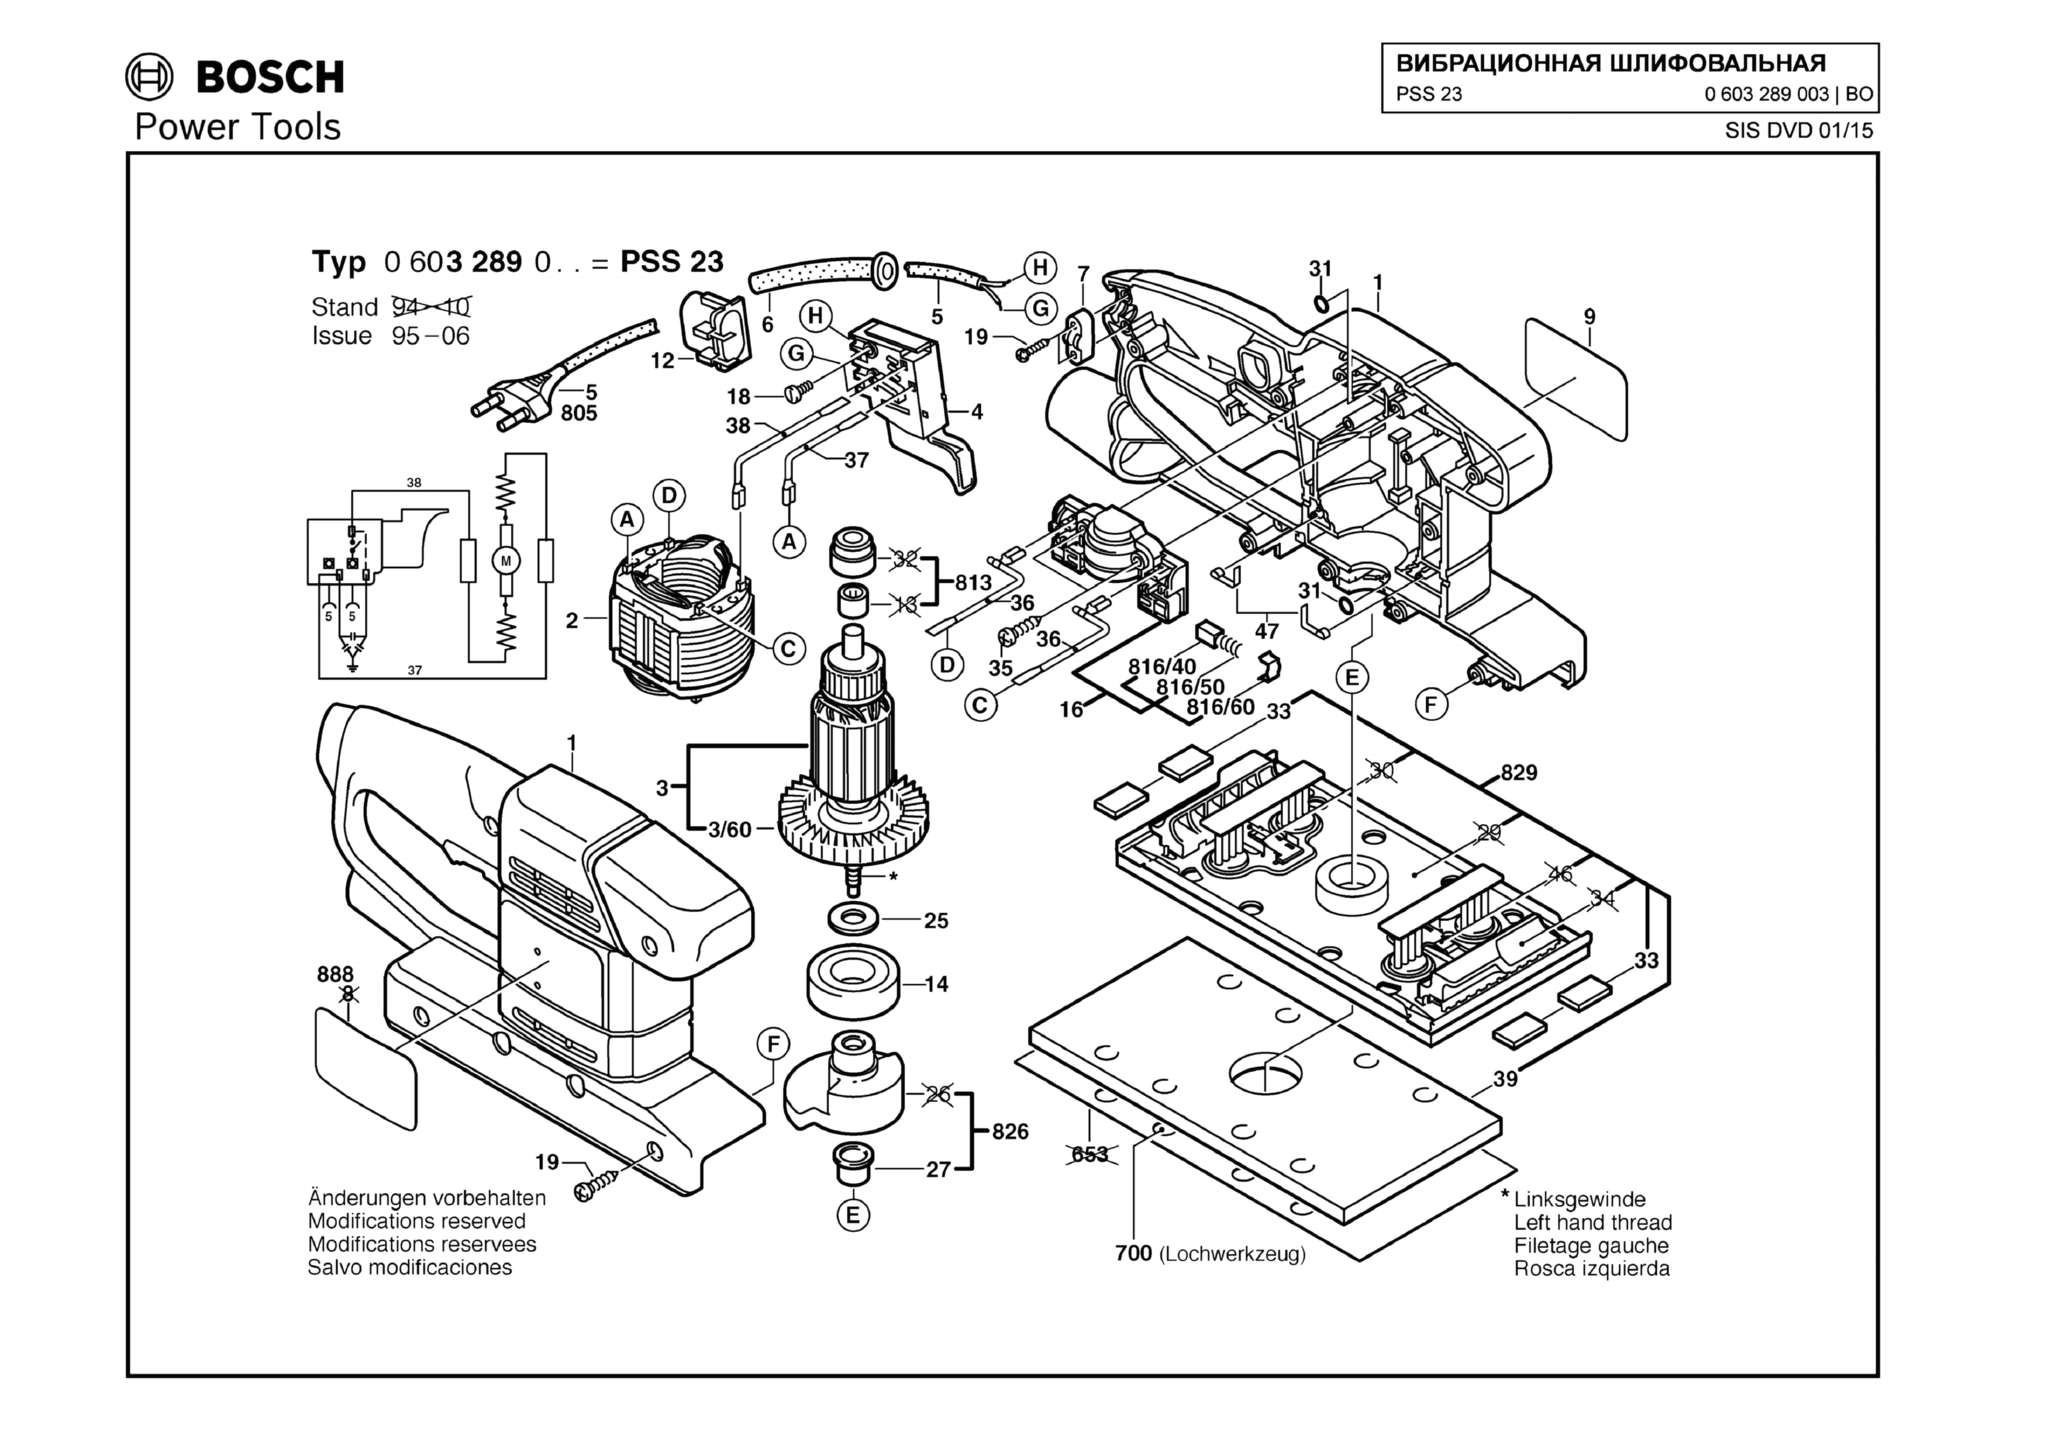 Запчасти, схема и деталировка Bosch PSS 23 (ТИП 0603289003)